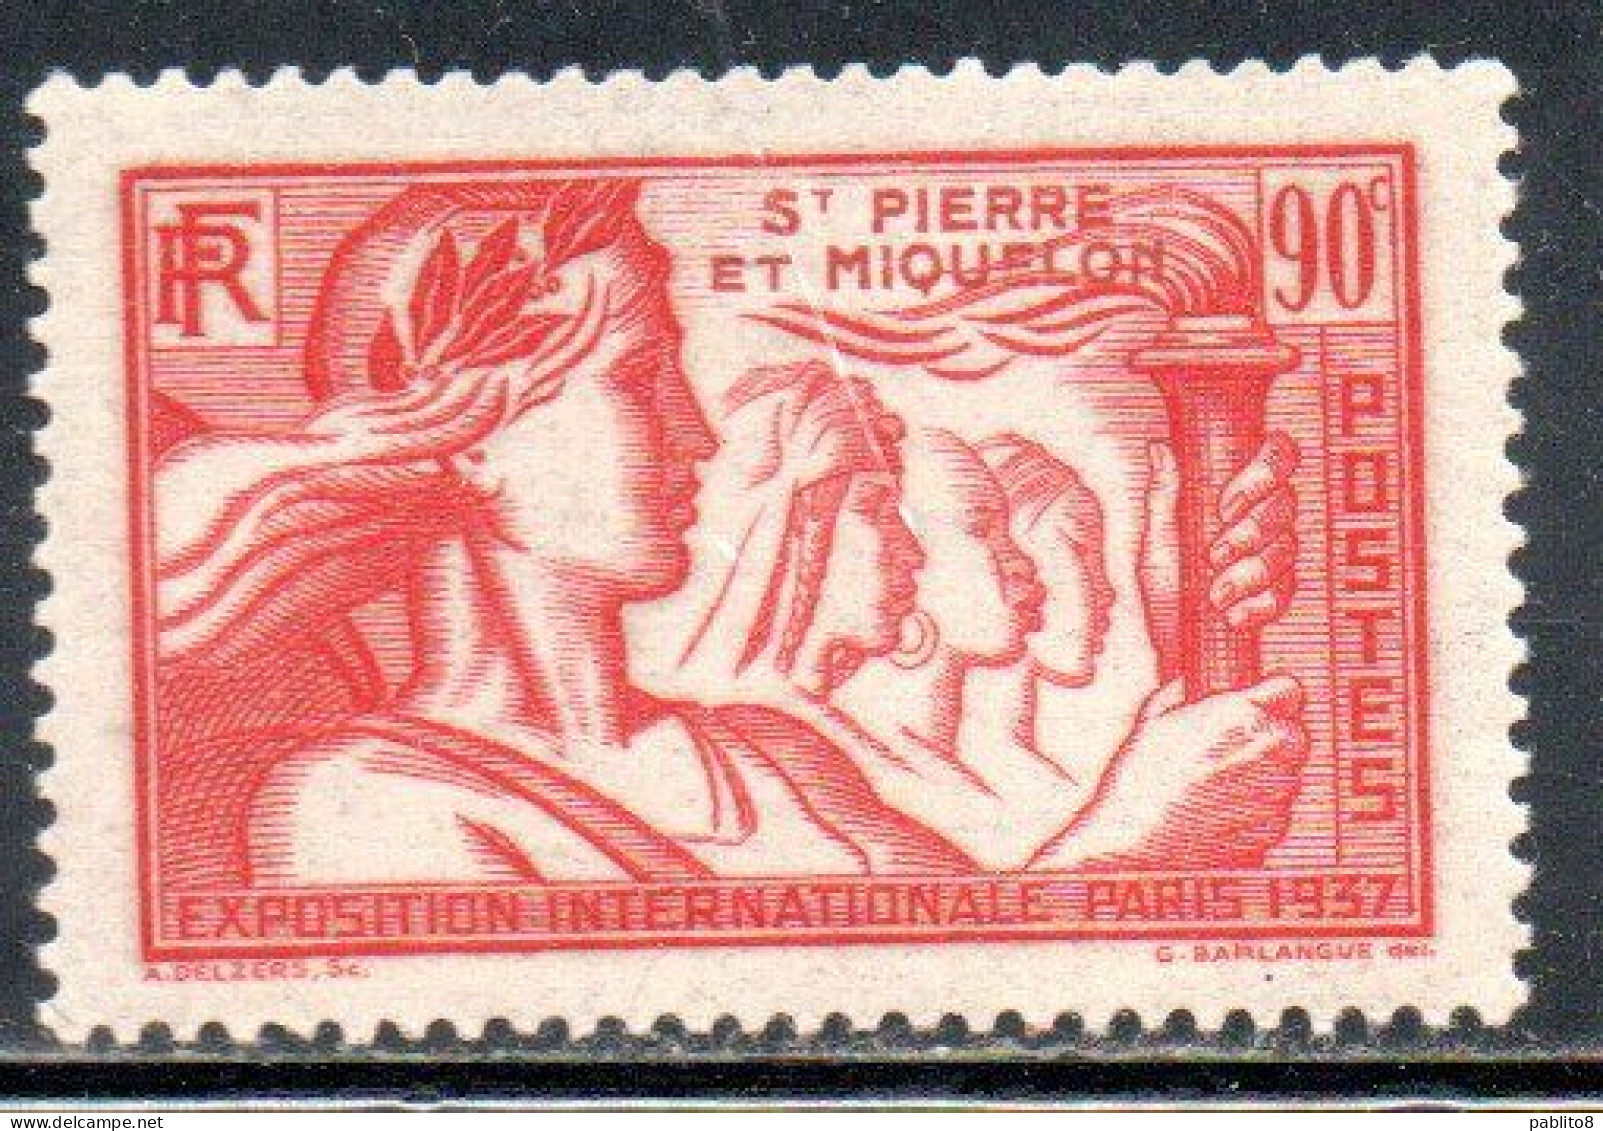 ST. SAINT PIERRE AND ET MIQUELON 1937 PARIS INTERNATIONAL EXPOSITION ISSUE 90c MLH - Neufs